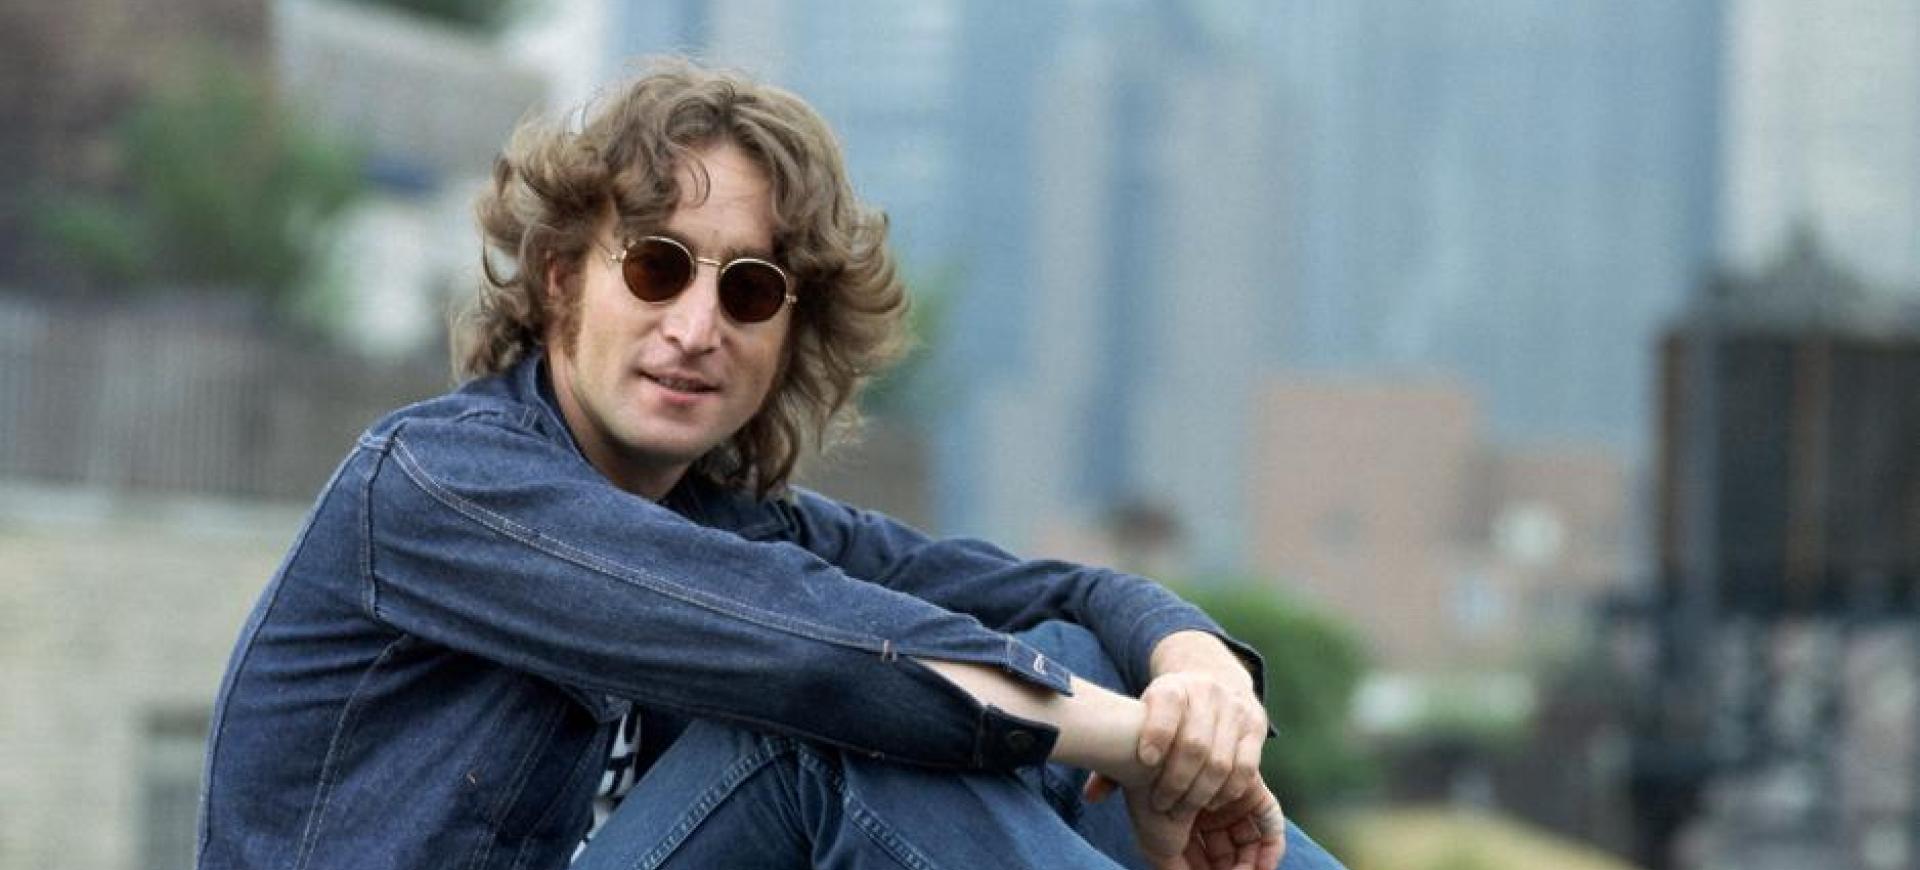 John Lennon | Rock & Roll Hall of Fame